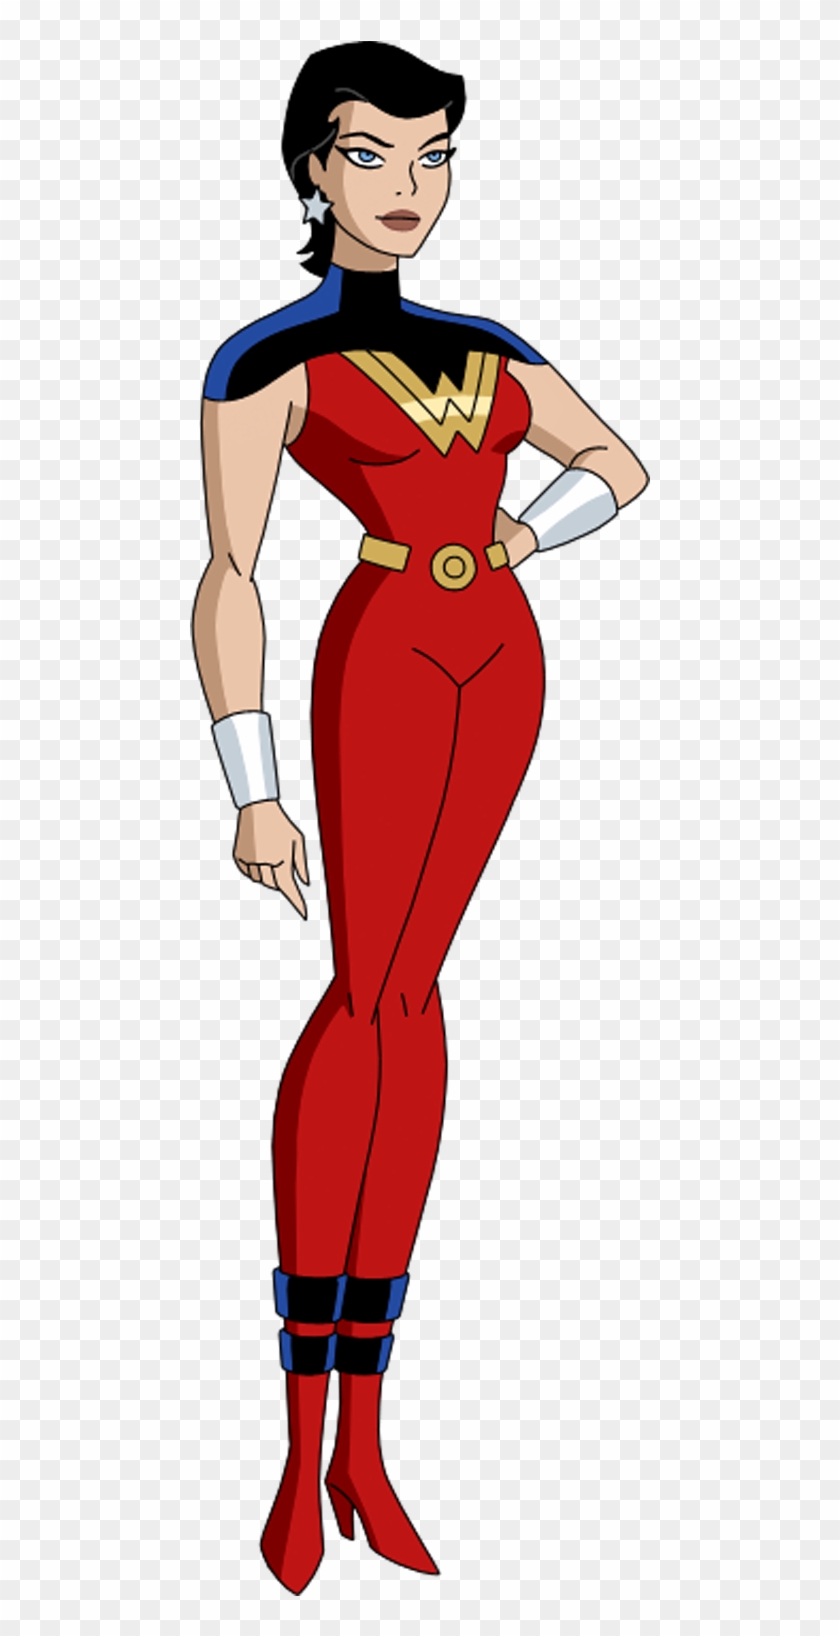 Lorde Da Justiça - Justice Lords Wonder Woman Clipart #4344958